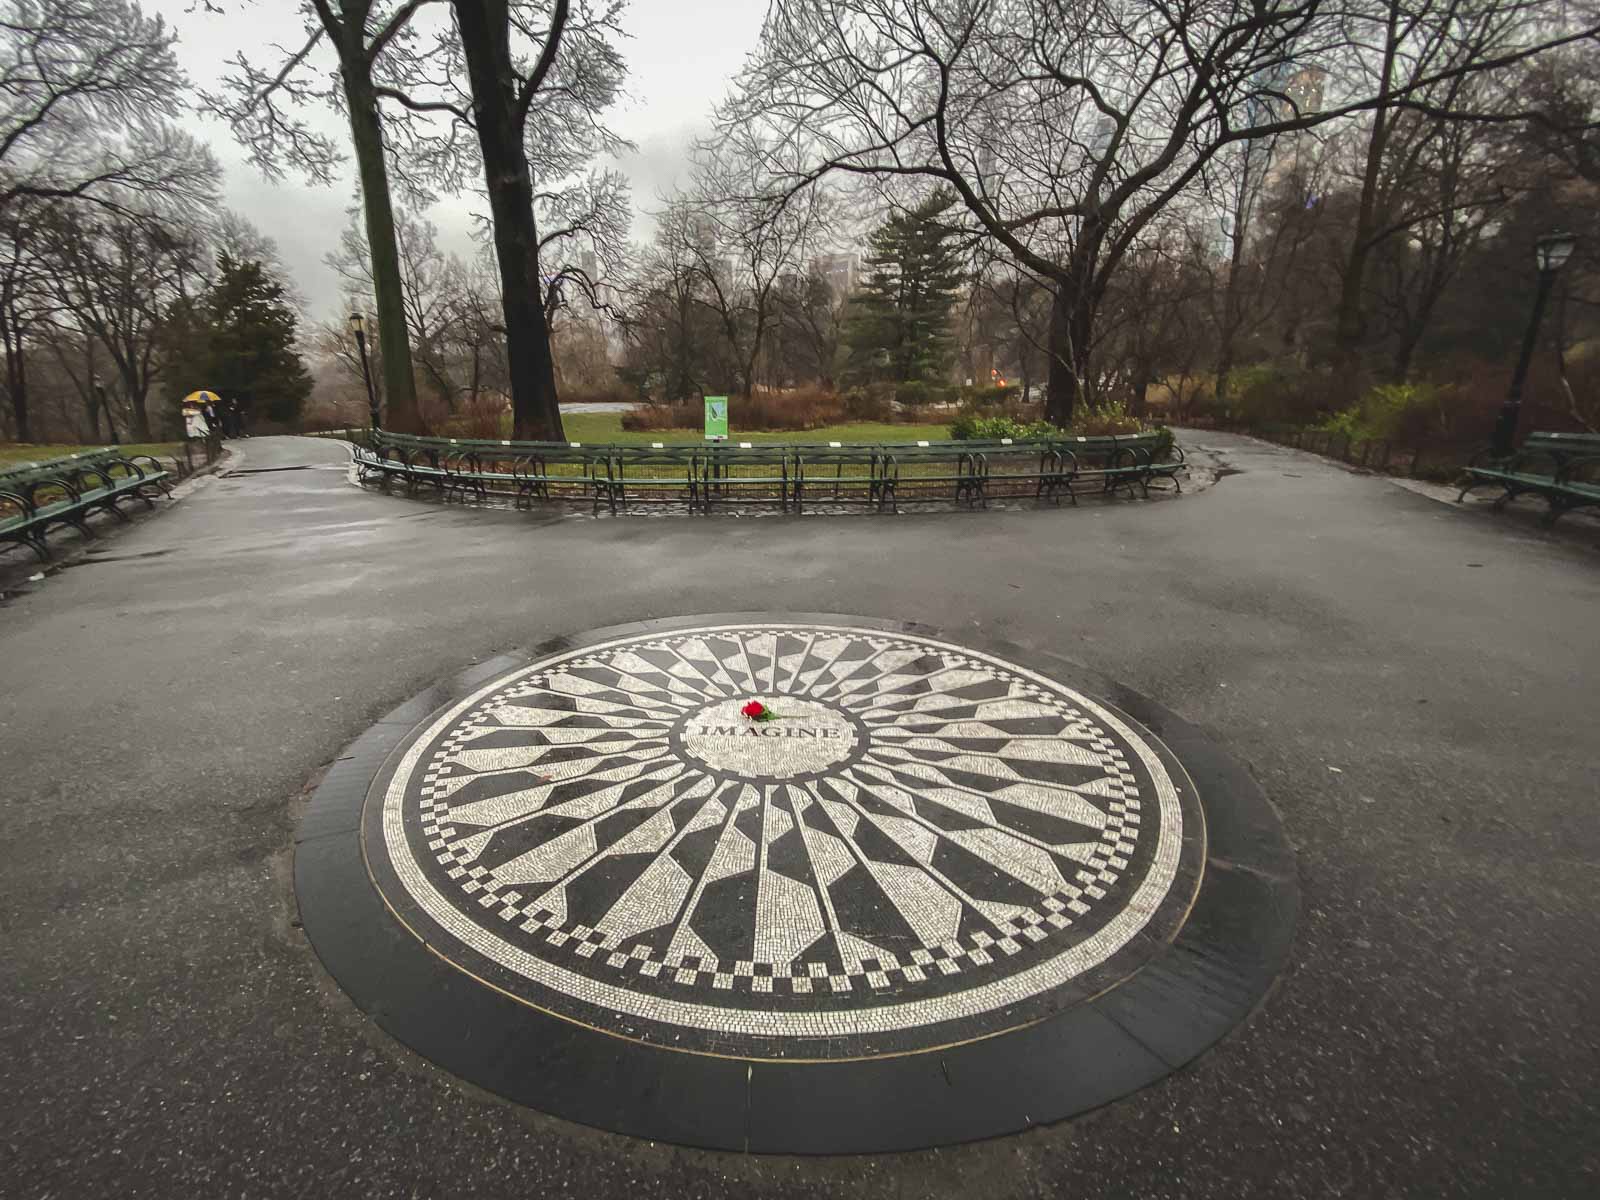 John Lennon Central Park